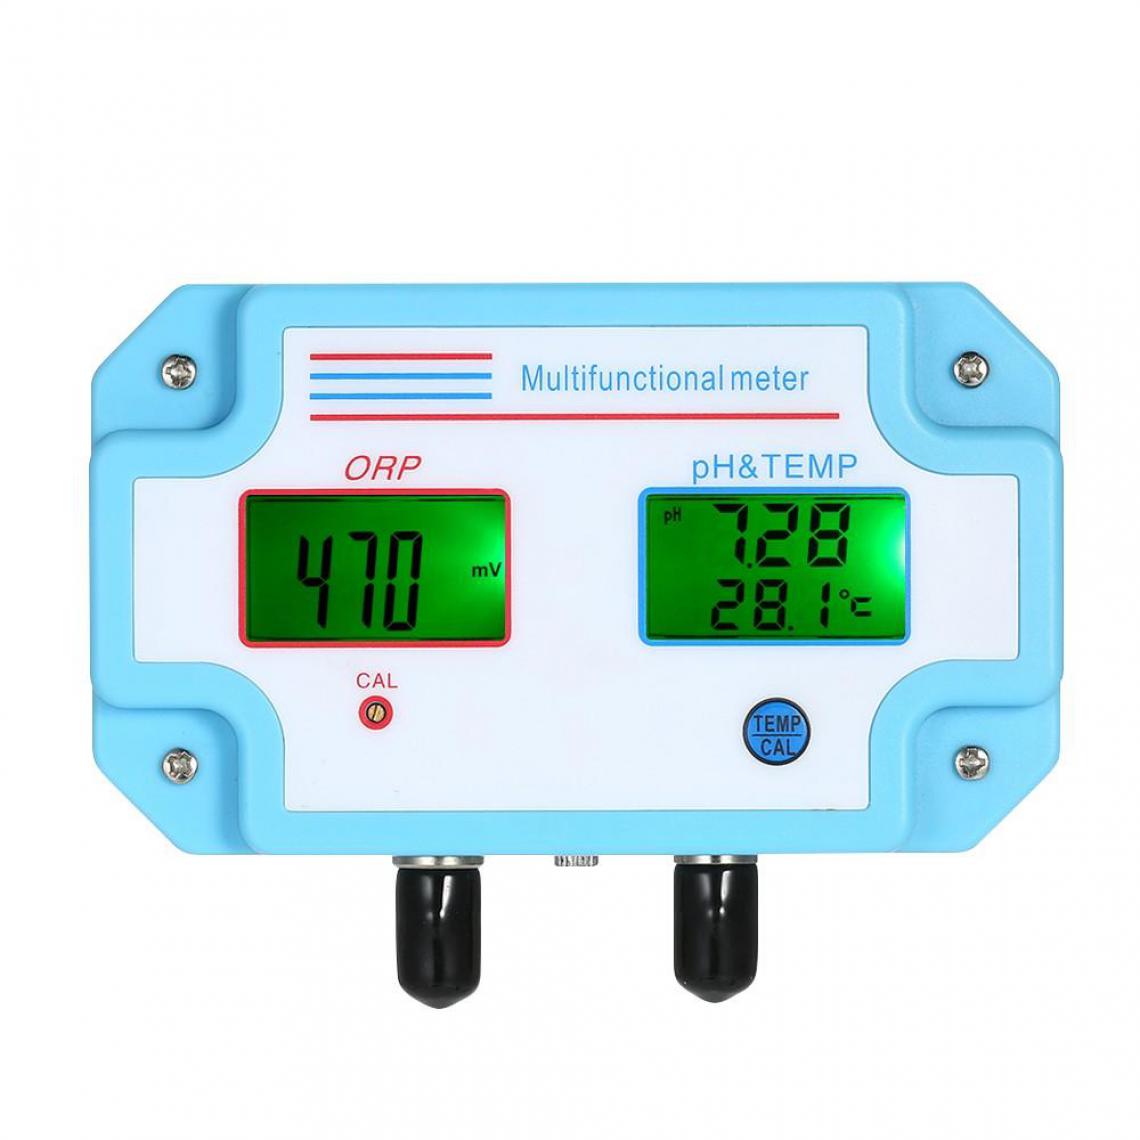 Justgreenbox - Détecteur d'eau 3 en 1 pH/ORP/TEMP Meter - T6112211974217 - Appareils de mesure